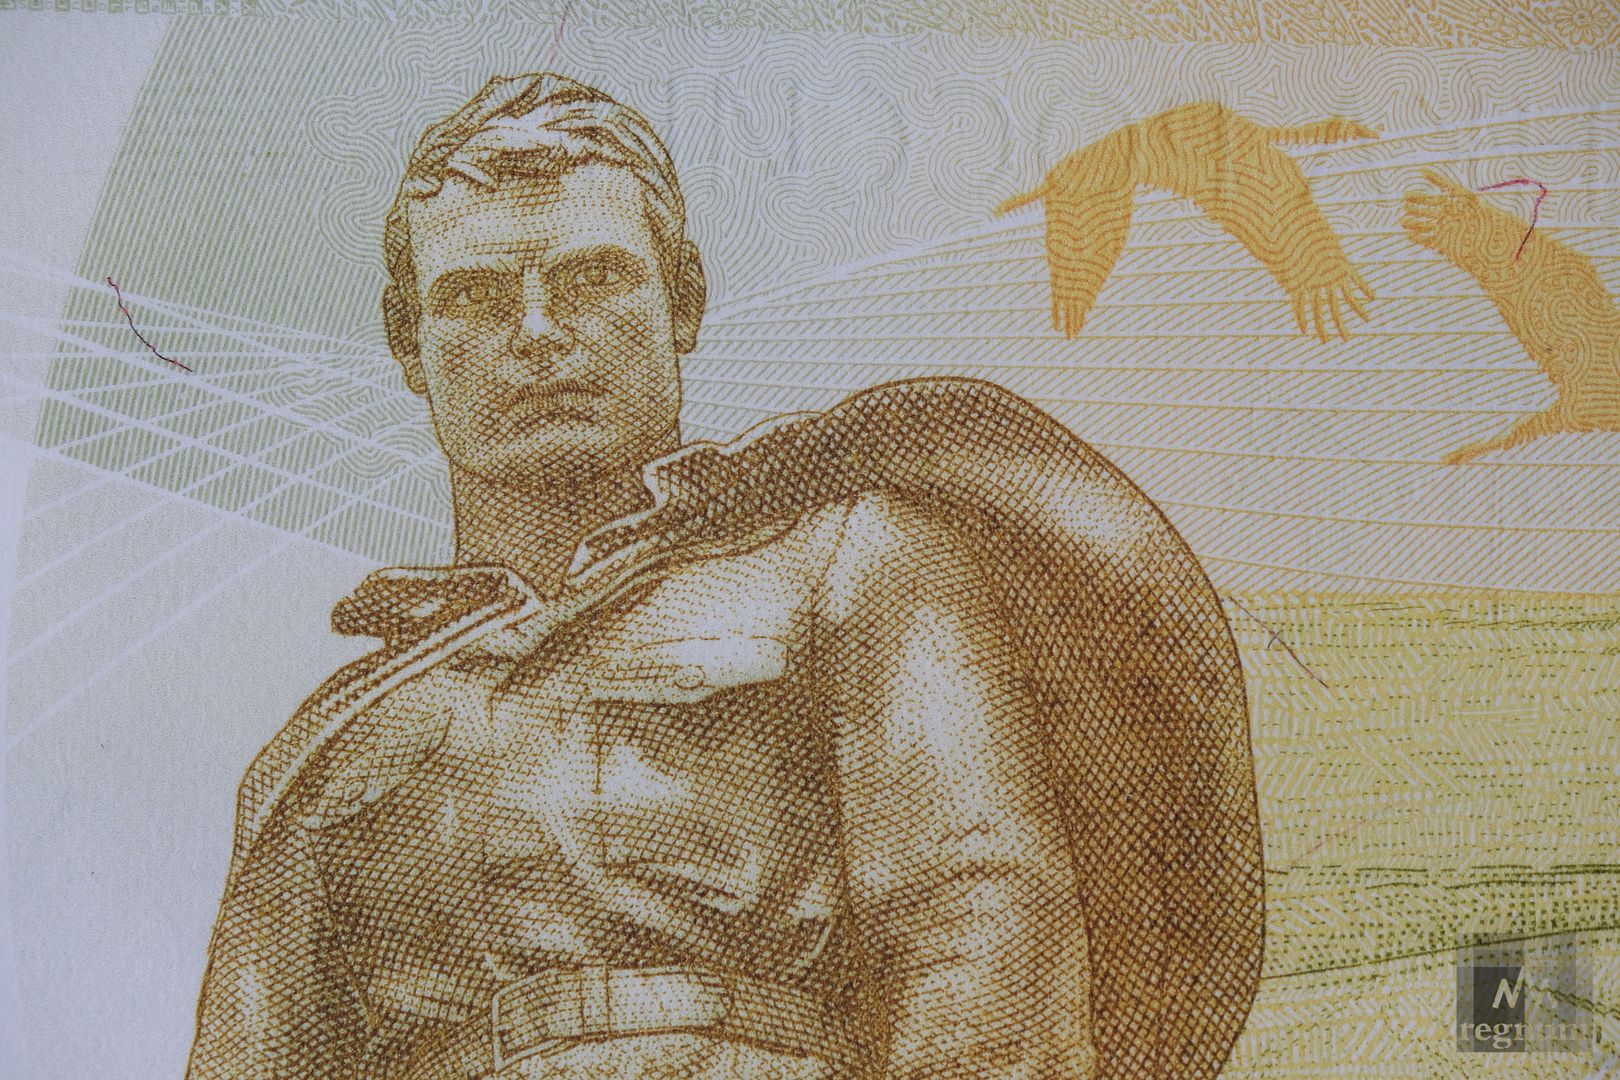 Презентация модернизированной 100-рублевой банкноты